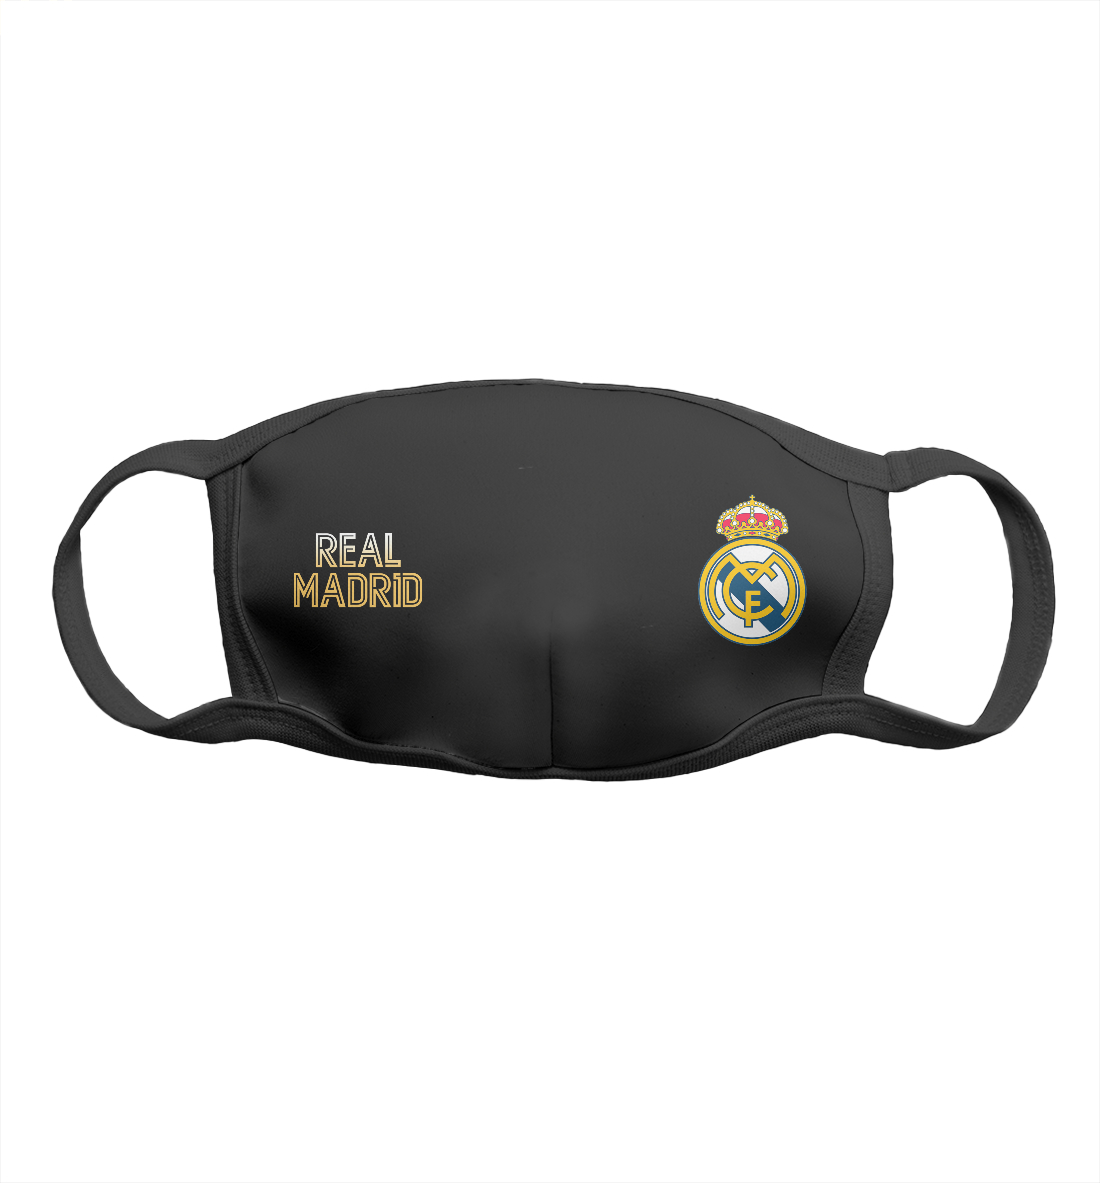 Мужская Маска Real Madrid Gold, артикул REA-581283-msk-2mp